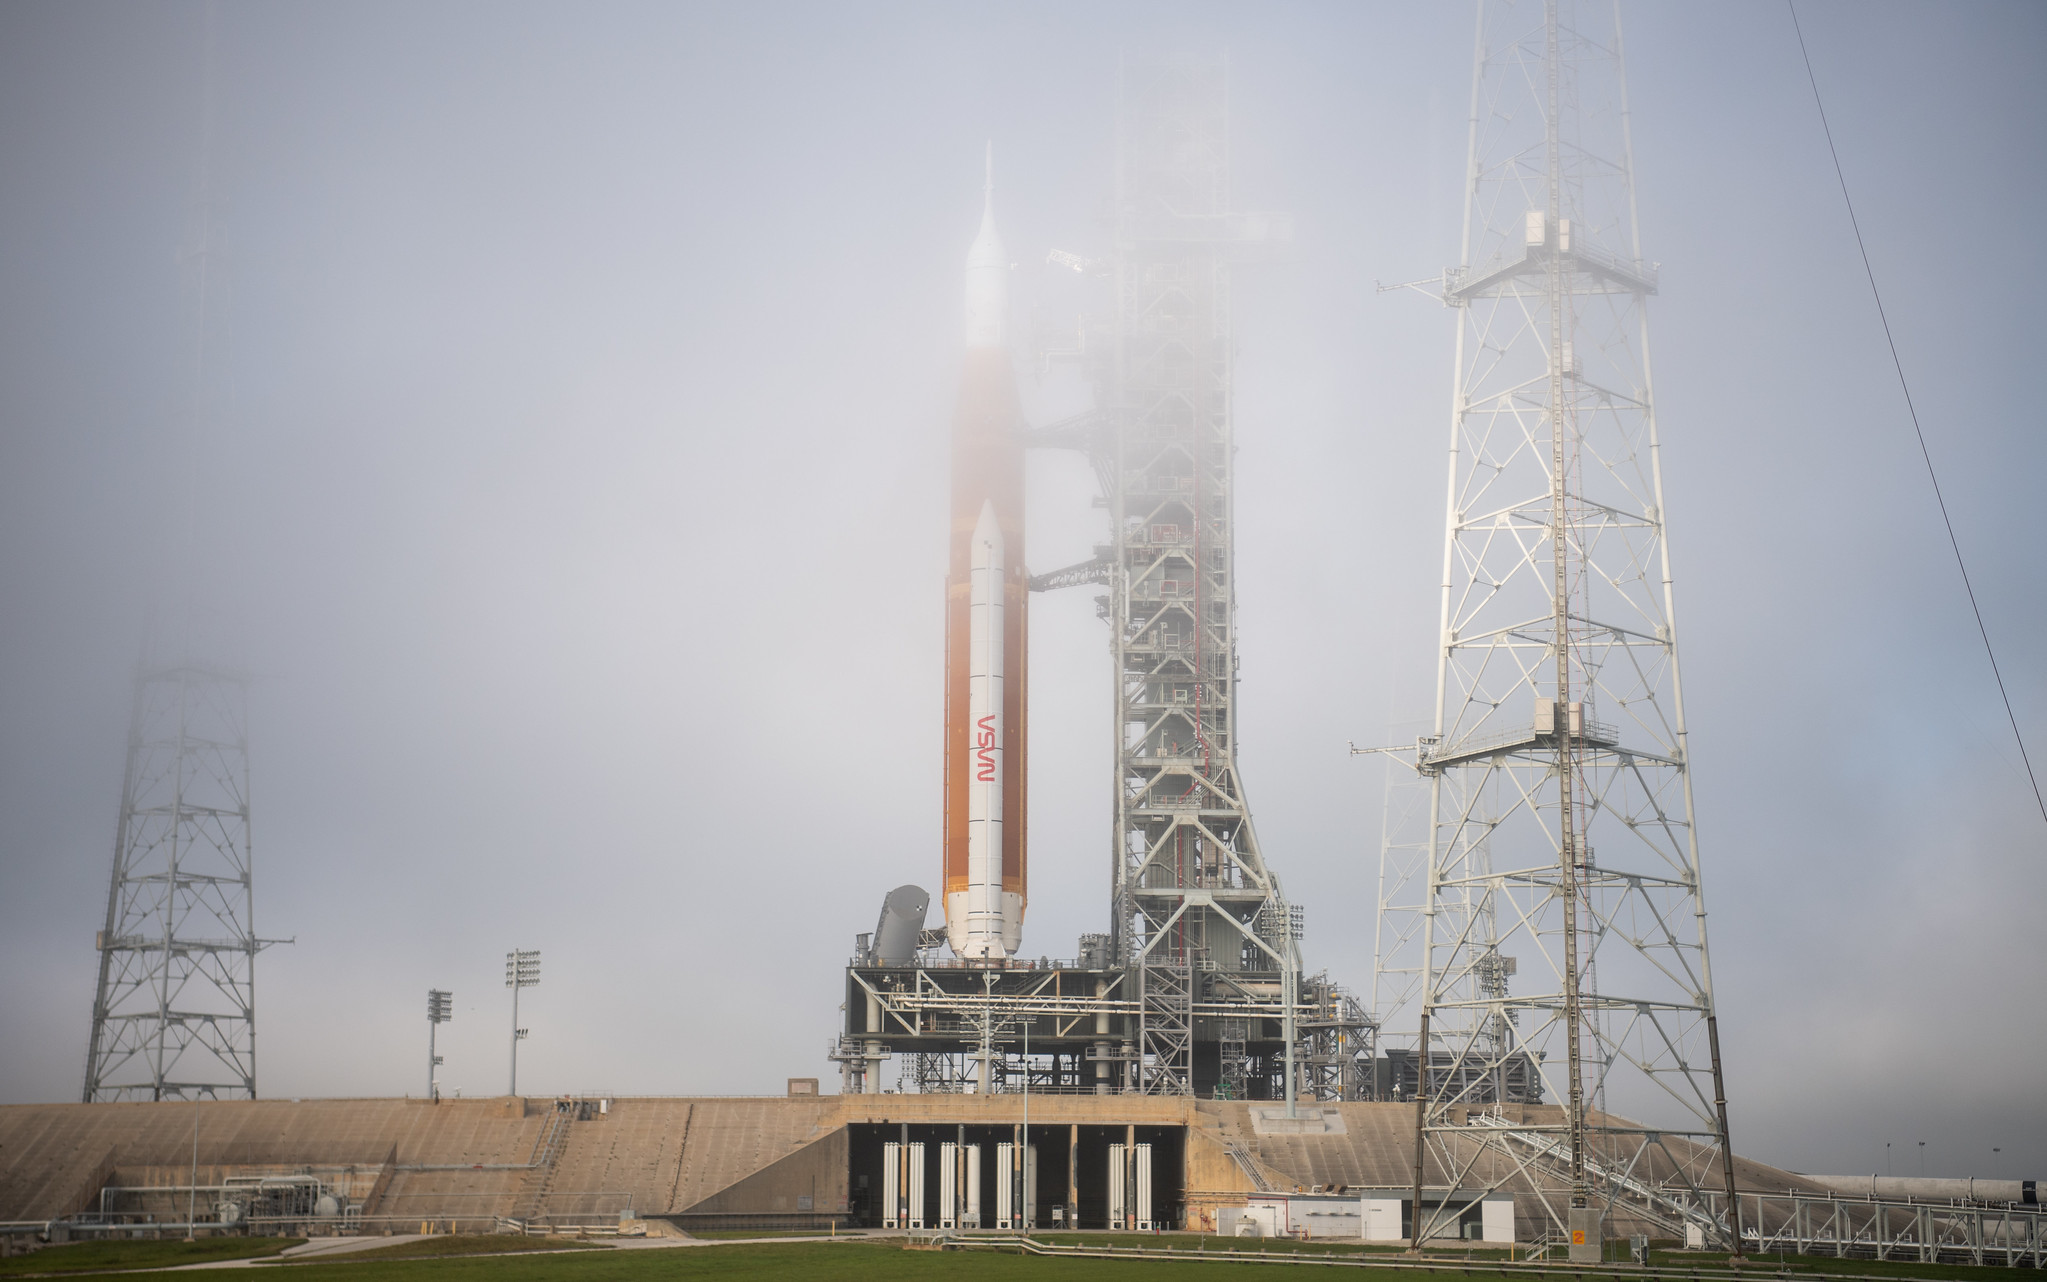 Лунная ракета SLS и корабль Orion готовятся к старту миссии Artemis 1 – фото